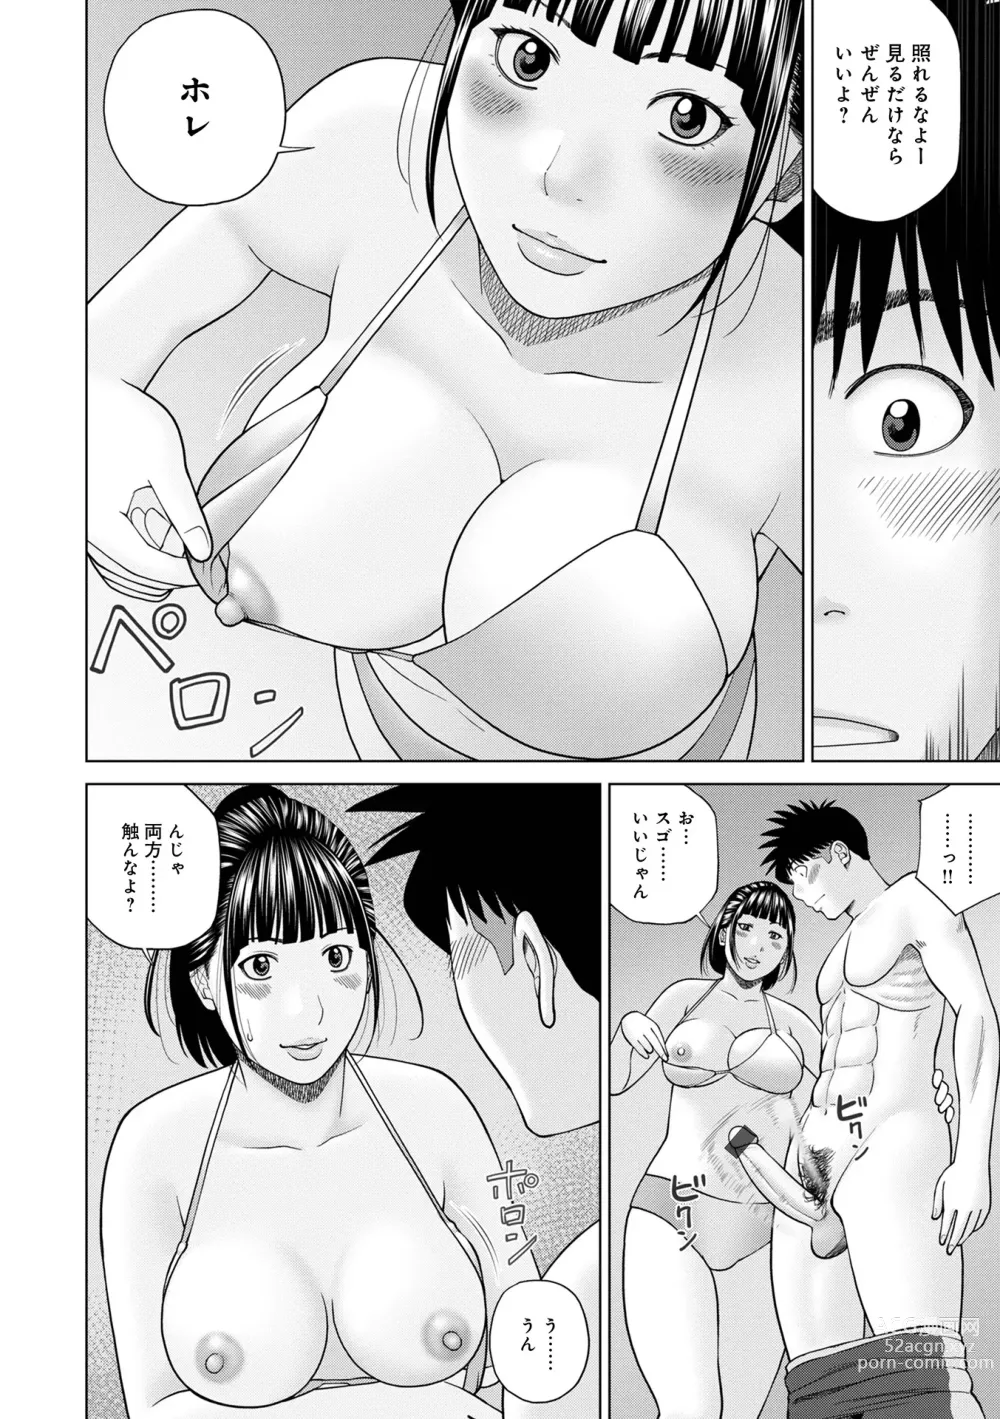 Page 18 of manga WEB Ban COMIC Gekiyaba! Vol. 160